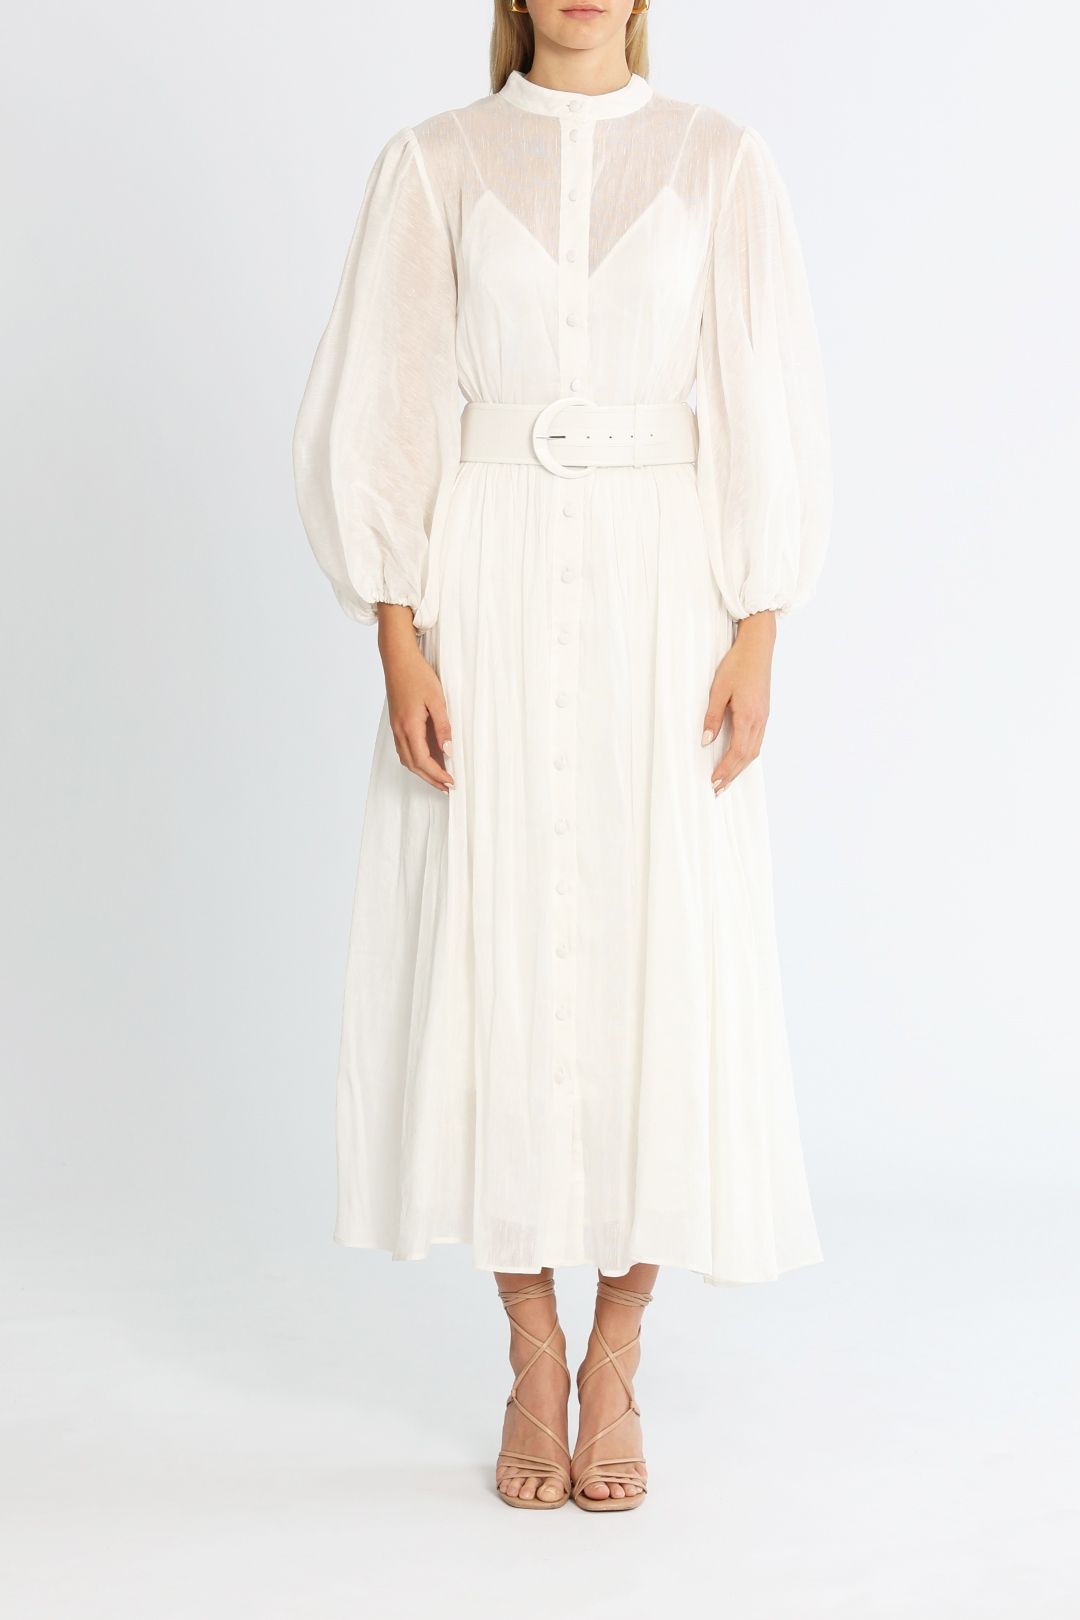 LEO LIN Valentina Silk Linen Midi Dress White